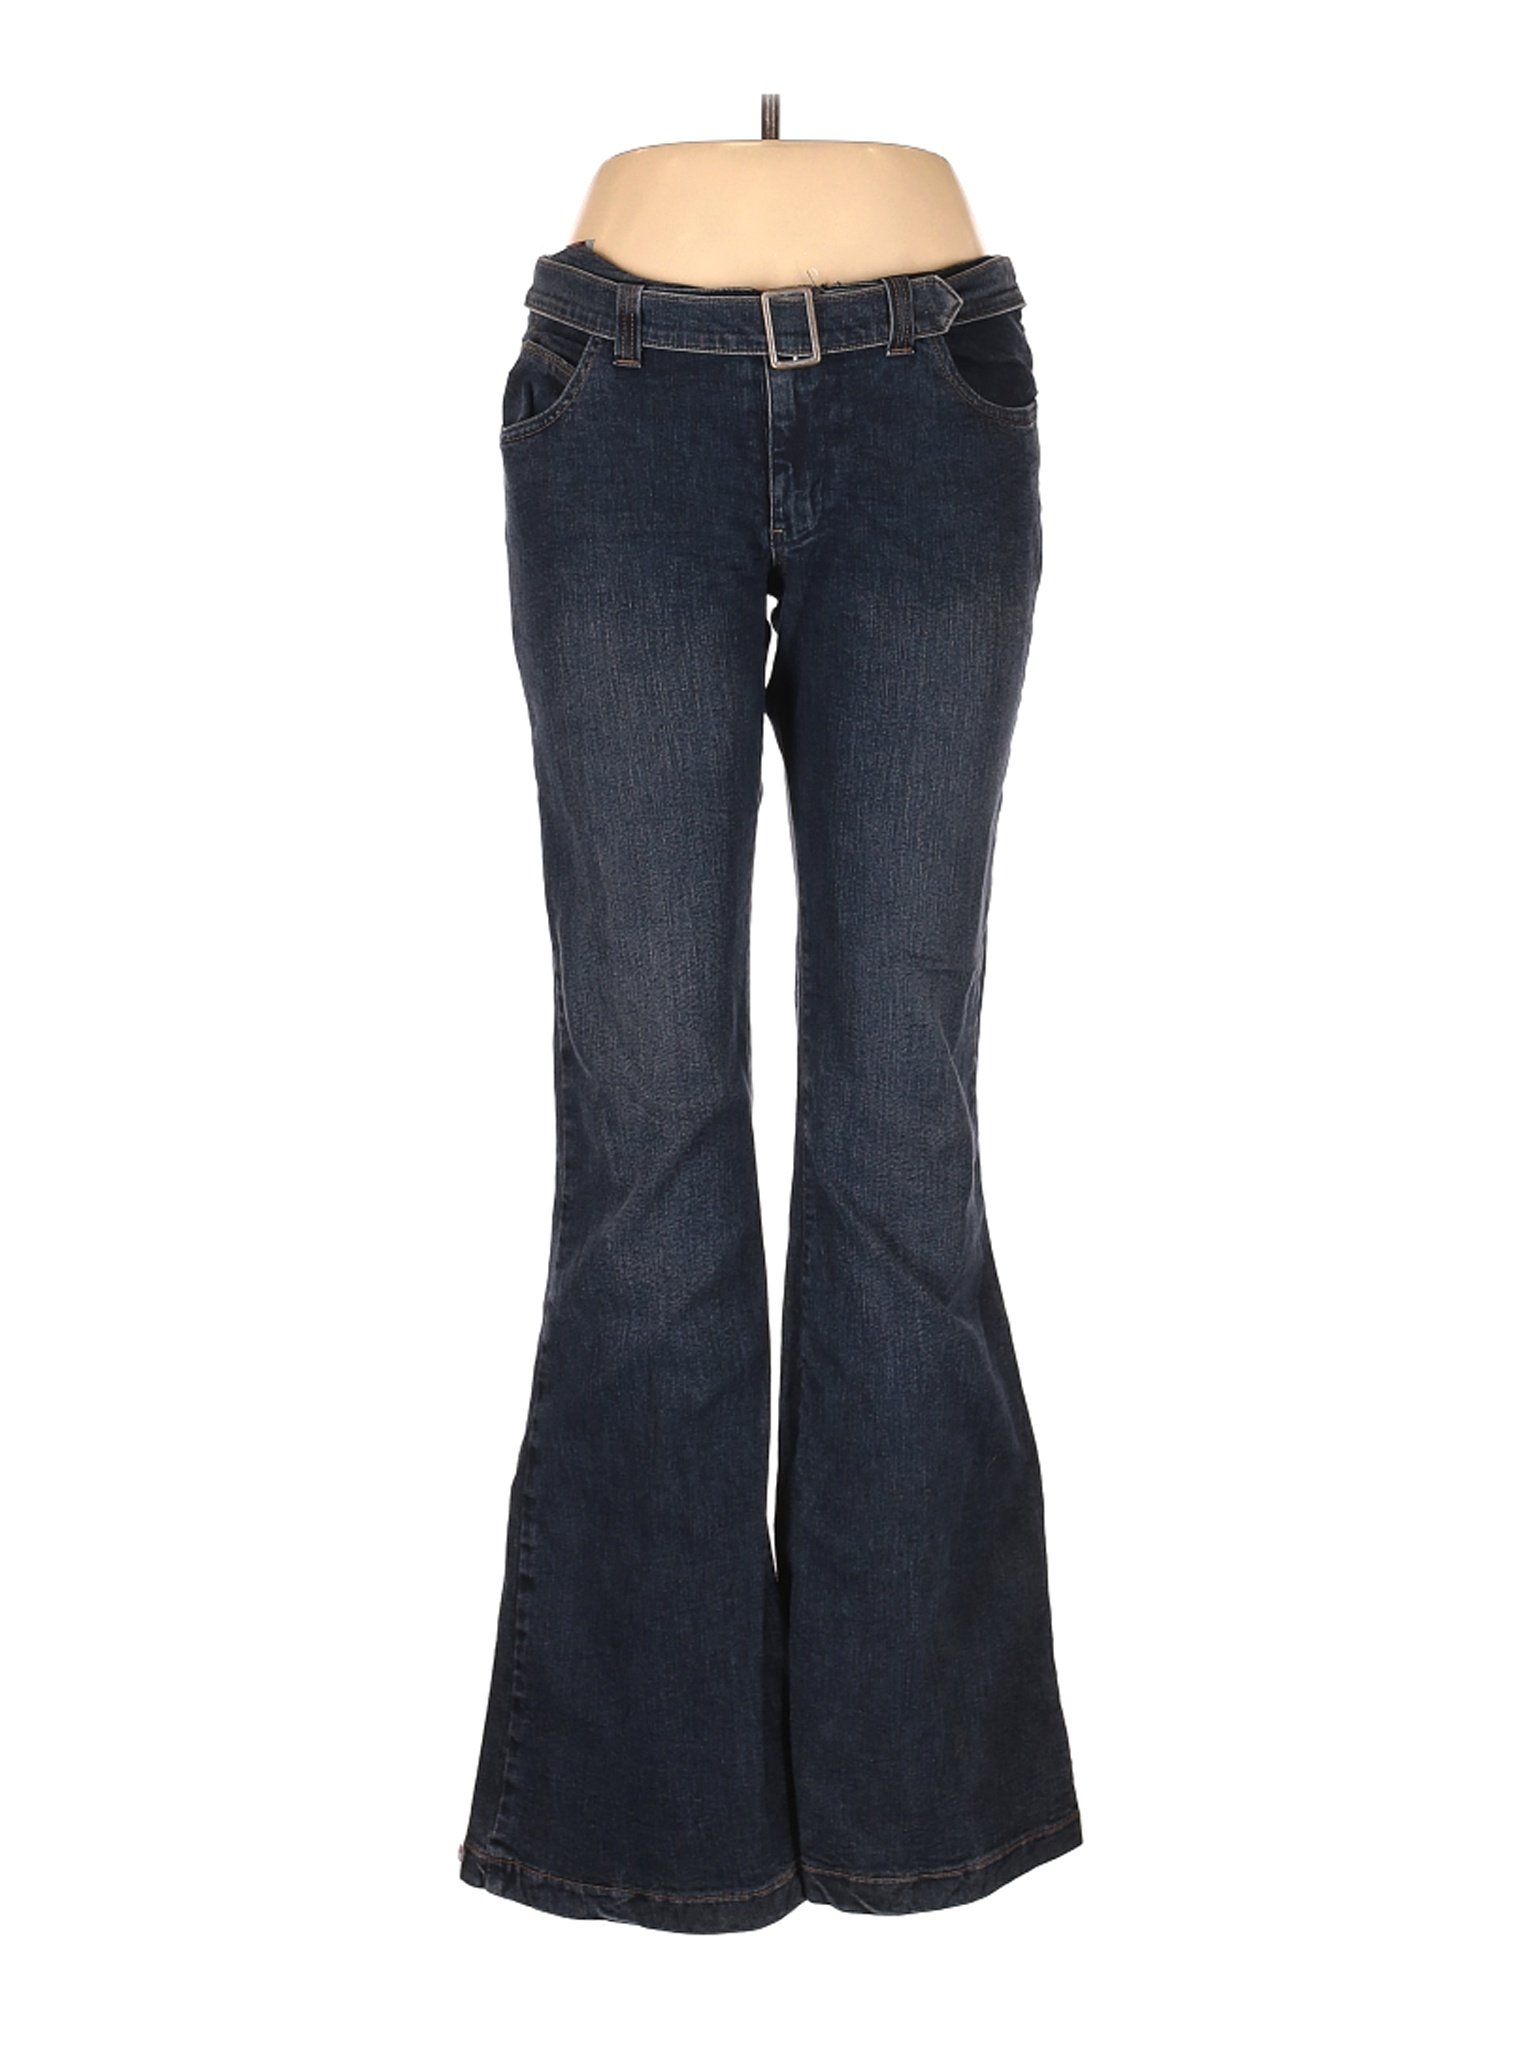 Miss Sixty Women Blue Jeans 33W | eBay